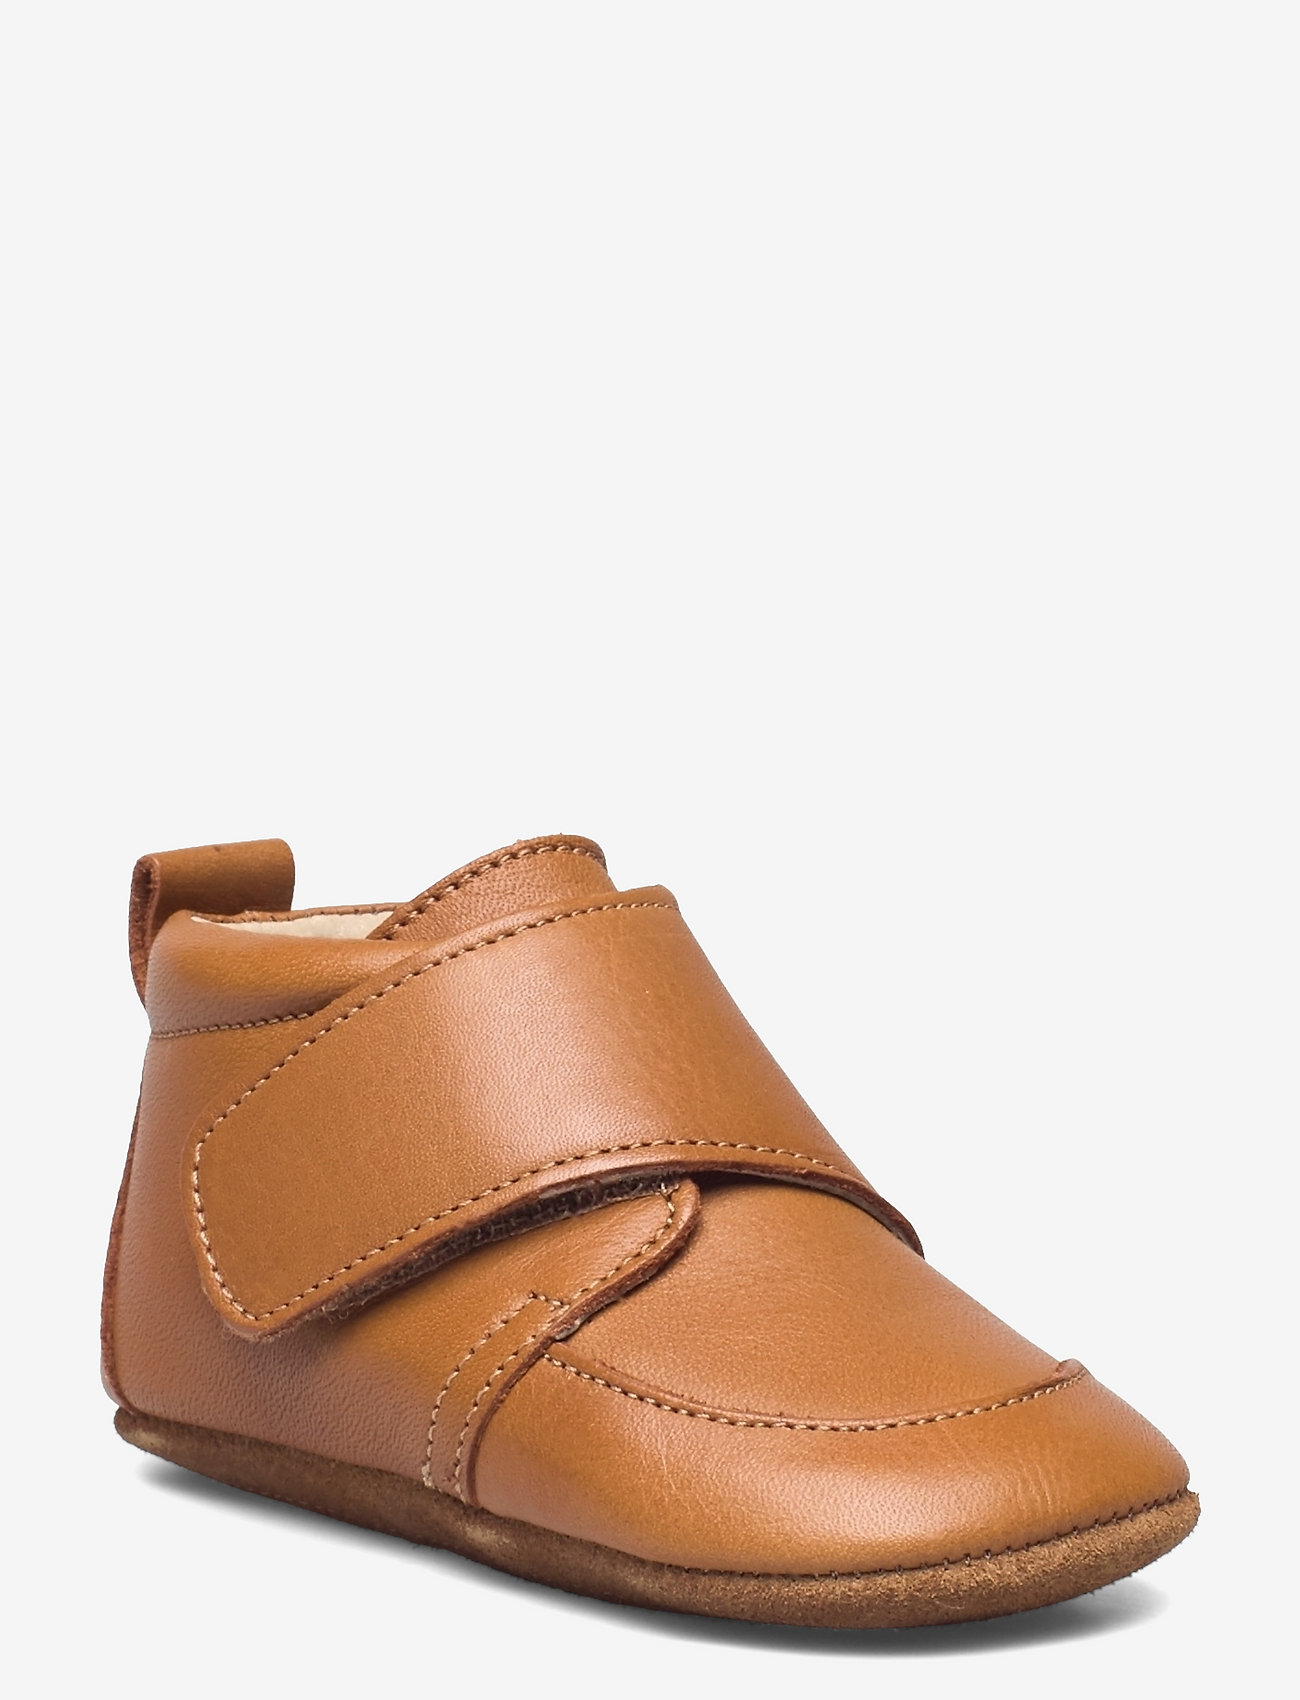 En Fant - Baby Leather slippers - syntymäpäivälahjat - leather brown - 0